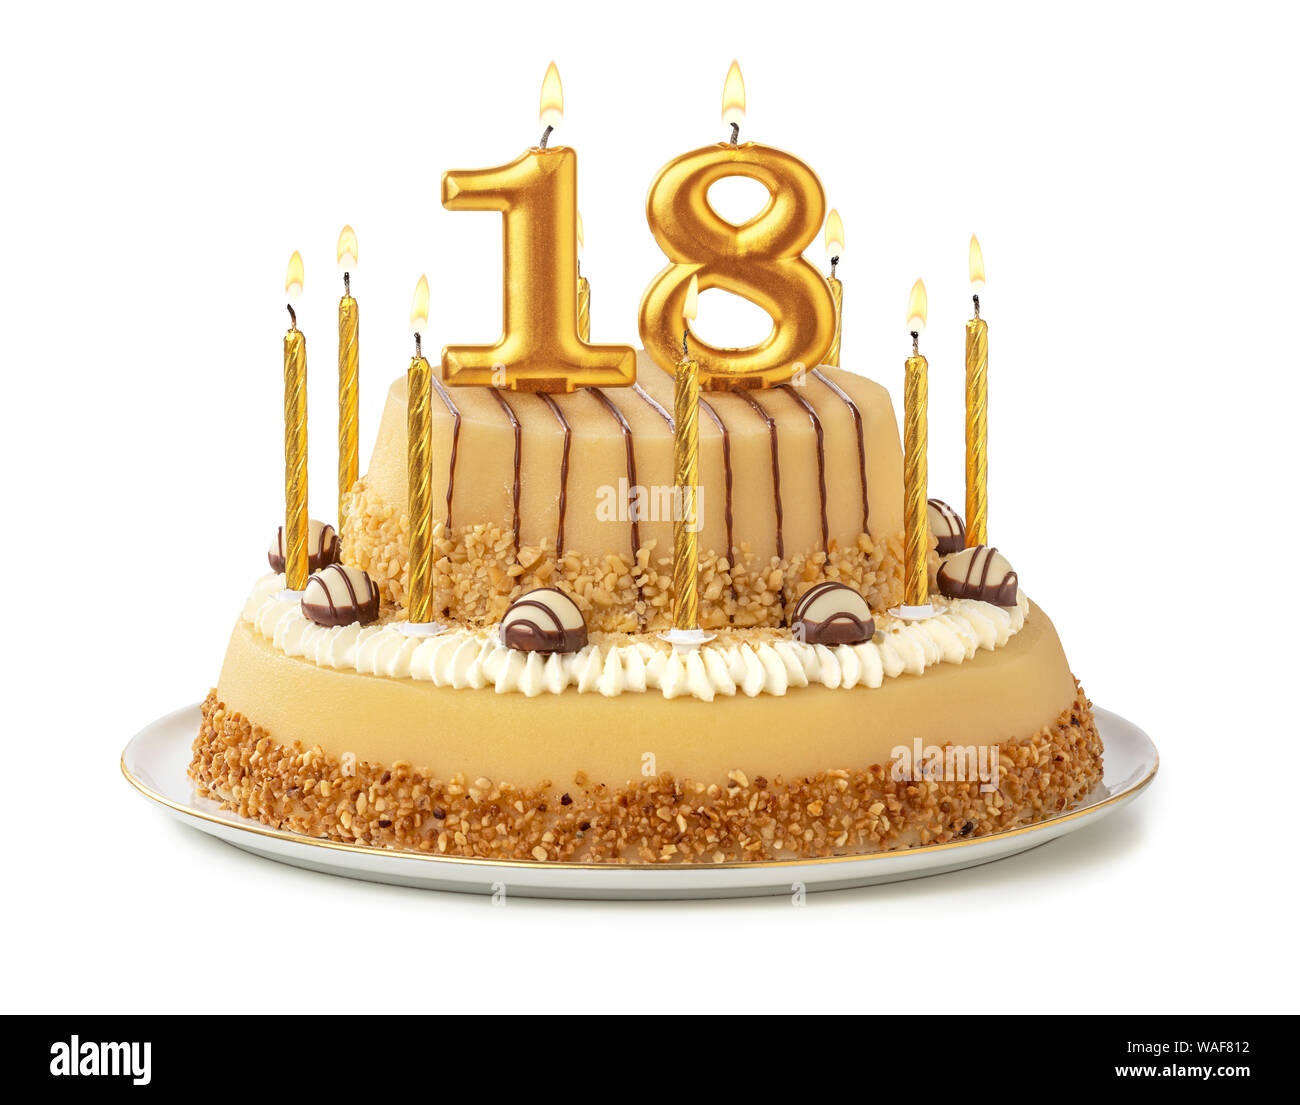 Bougies pour 18e anniversaire, bougie numéro 18, bougies dorées, bougie d' anniversaire pour gâteau avec Couronne, bougie d'anniversaire de  mariage,décorations de gâteau fête d'anniversaire,célébration : :  Cuisine et Maison